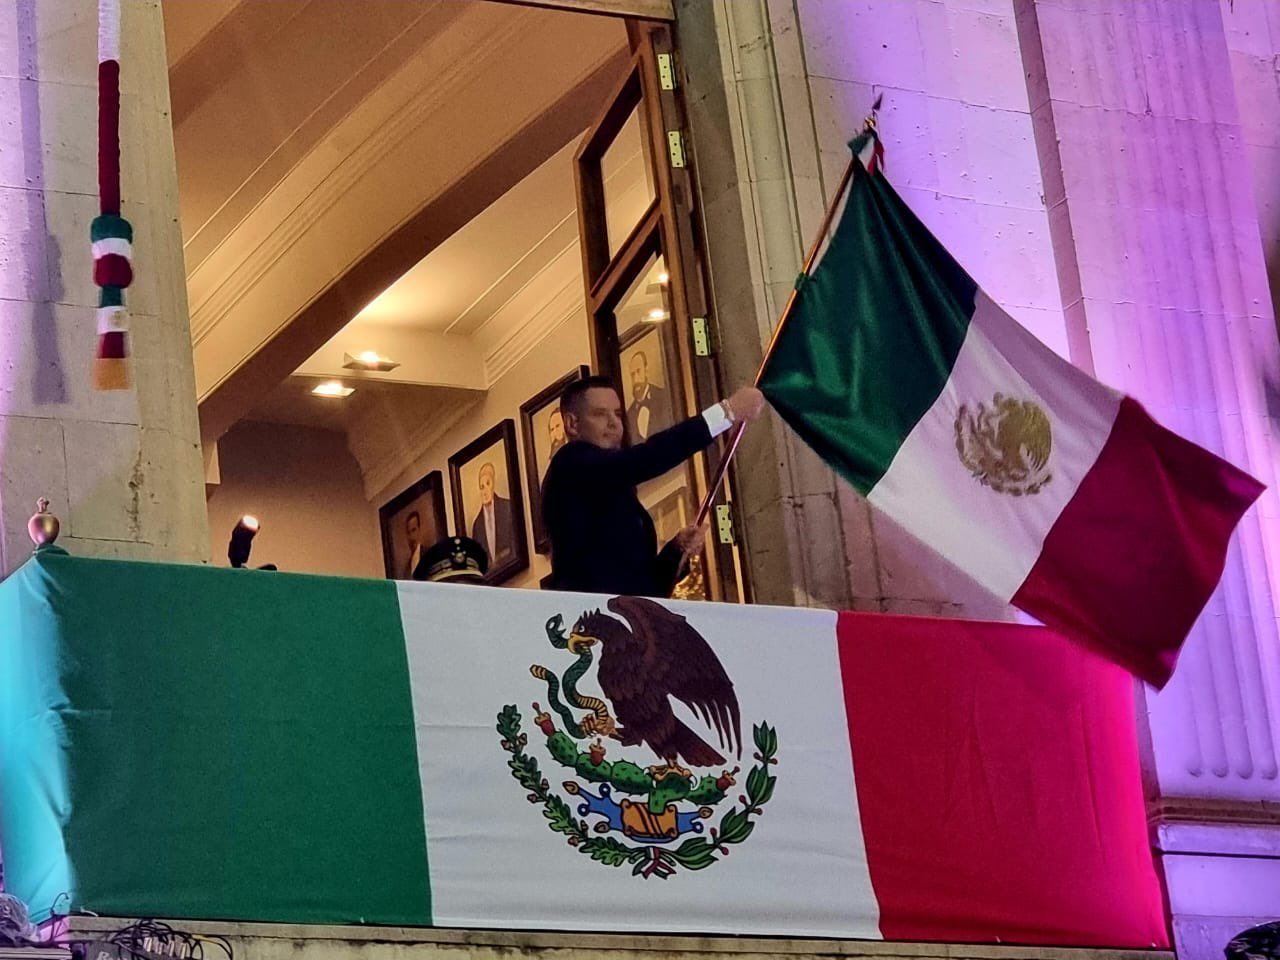 ▶ Sin incidentes concluye ceremonia del Grito de Independencia en Oaxaca